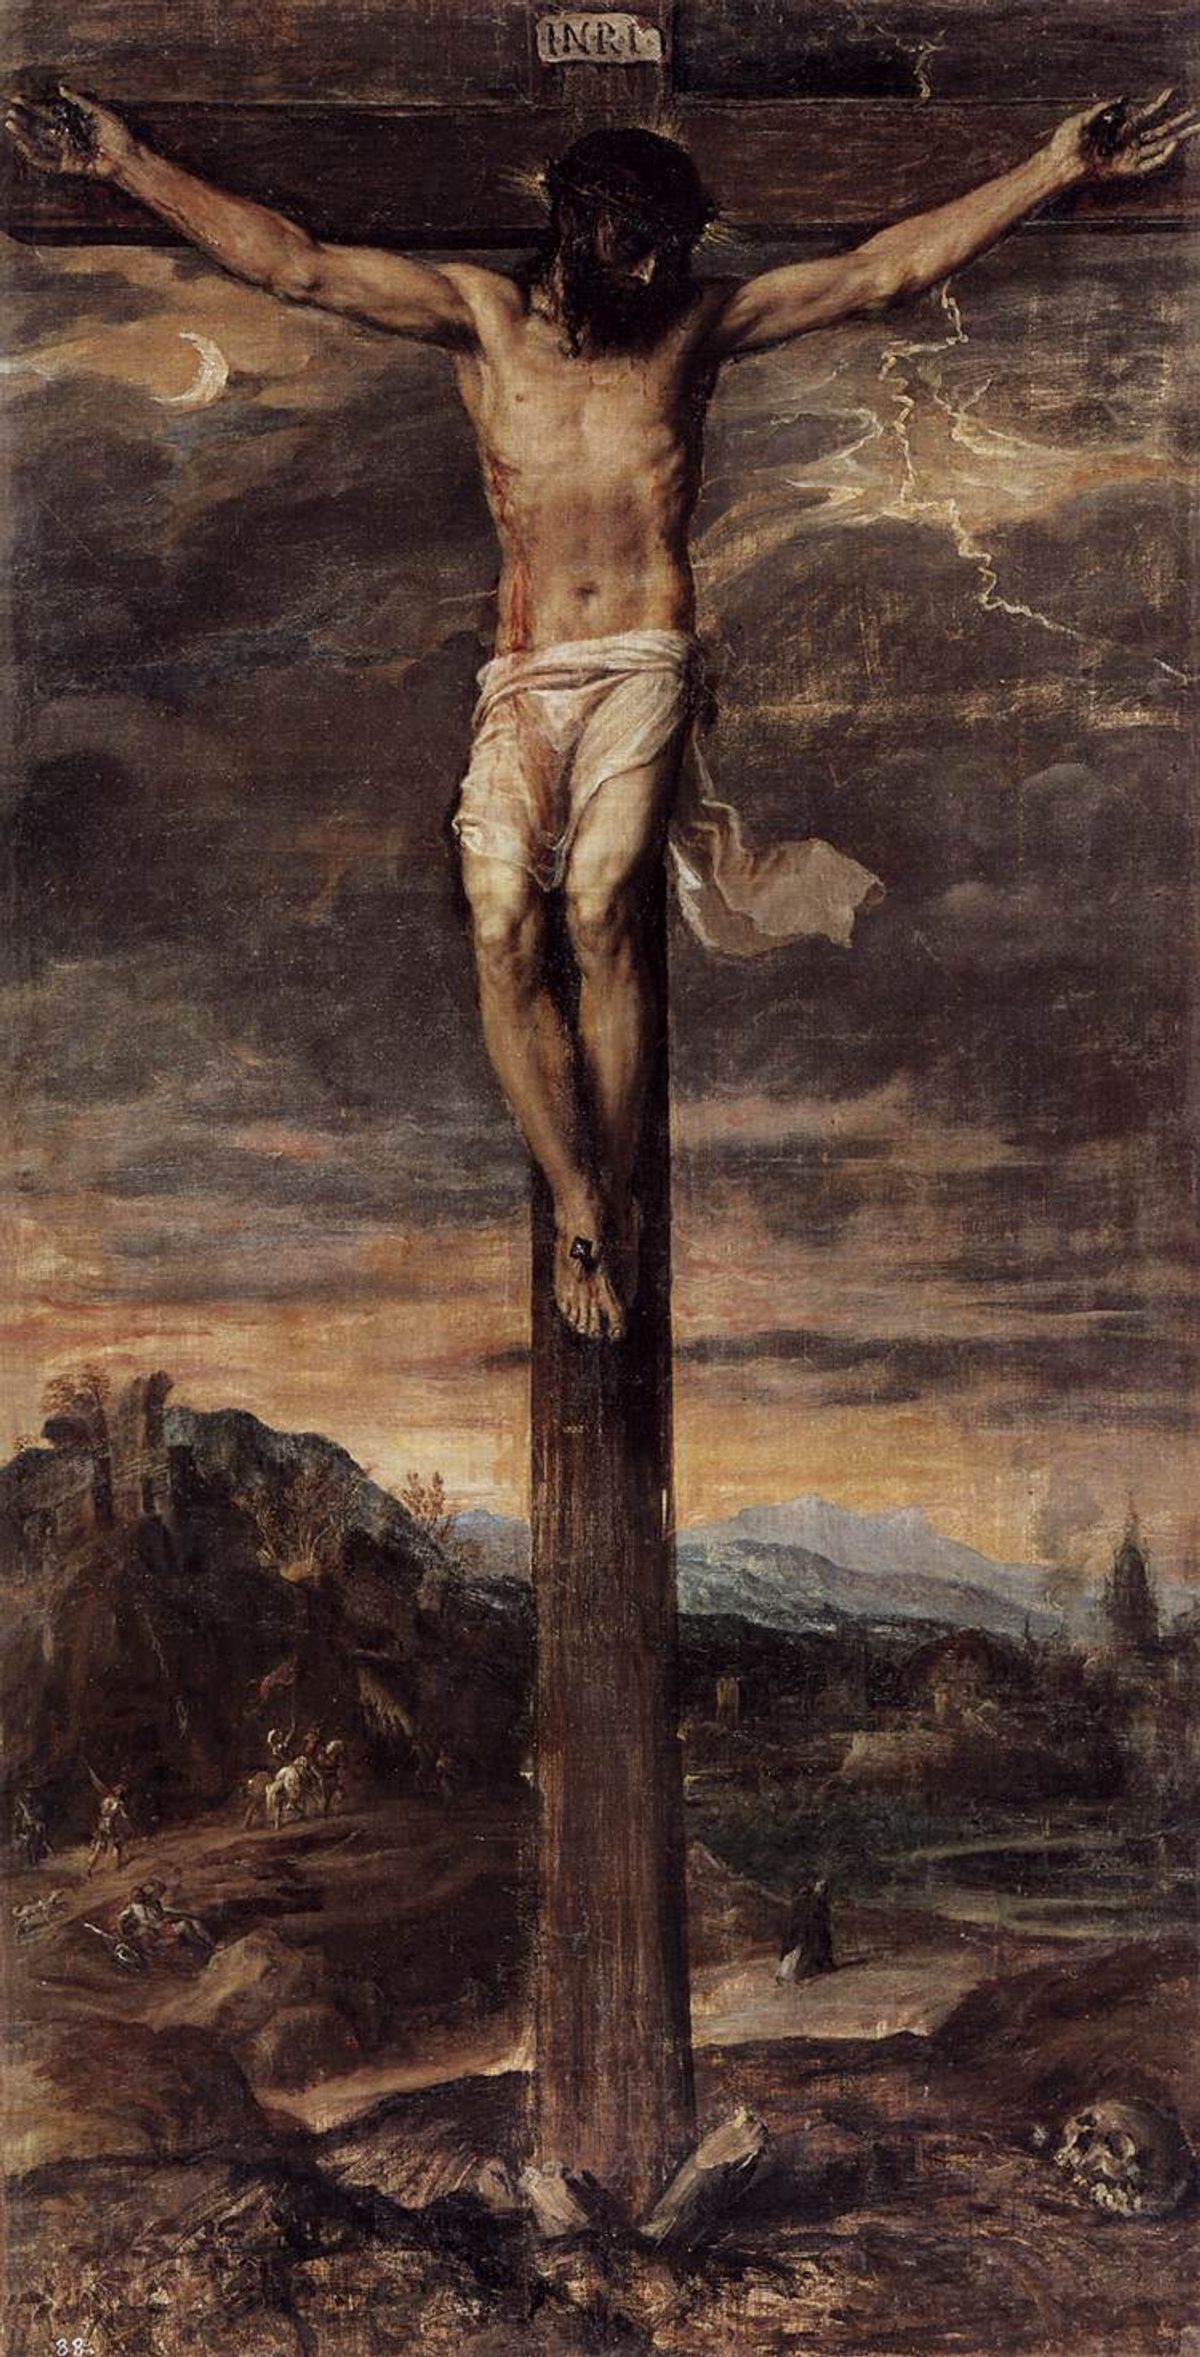 Titian's Crucifixion (around 1555) Via wikicommons